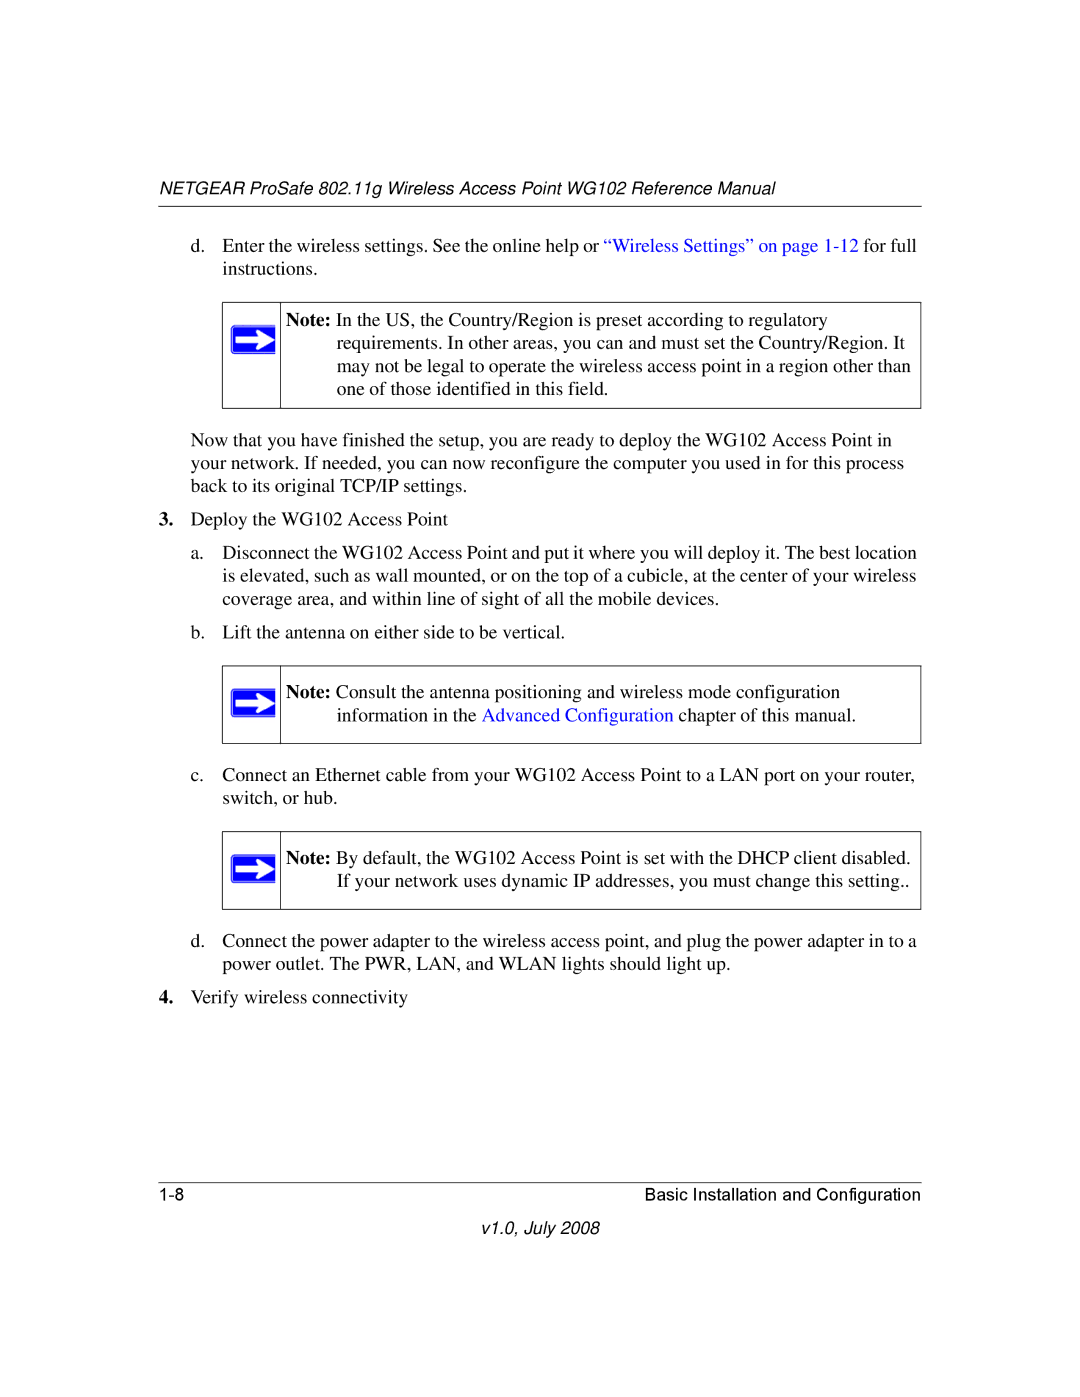 NETGEAR WG102NA manual V1.0, July 